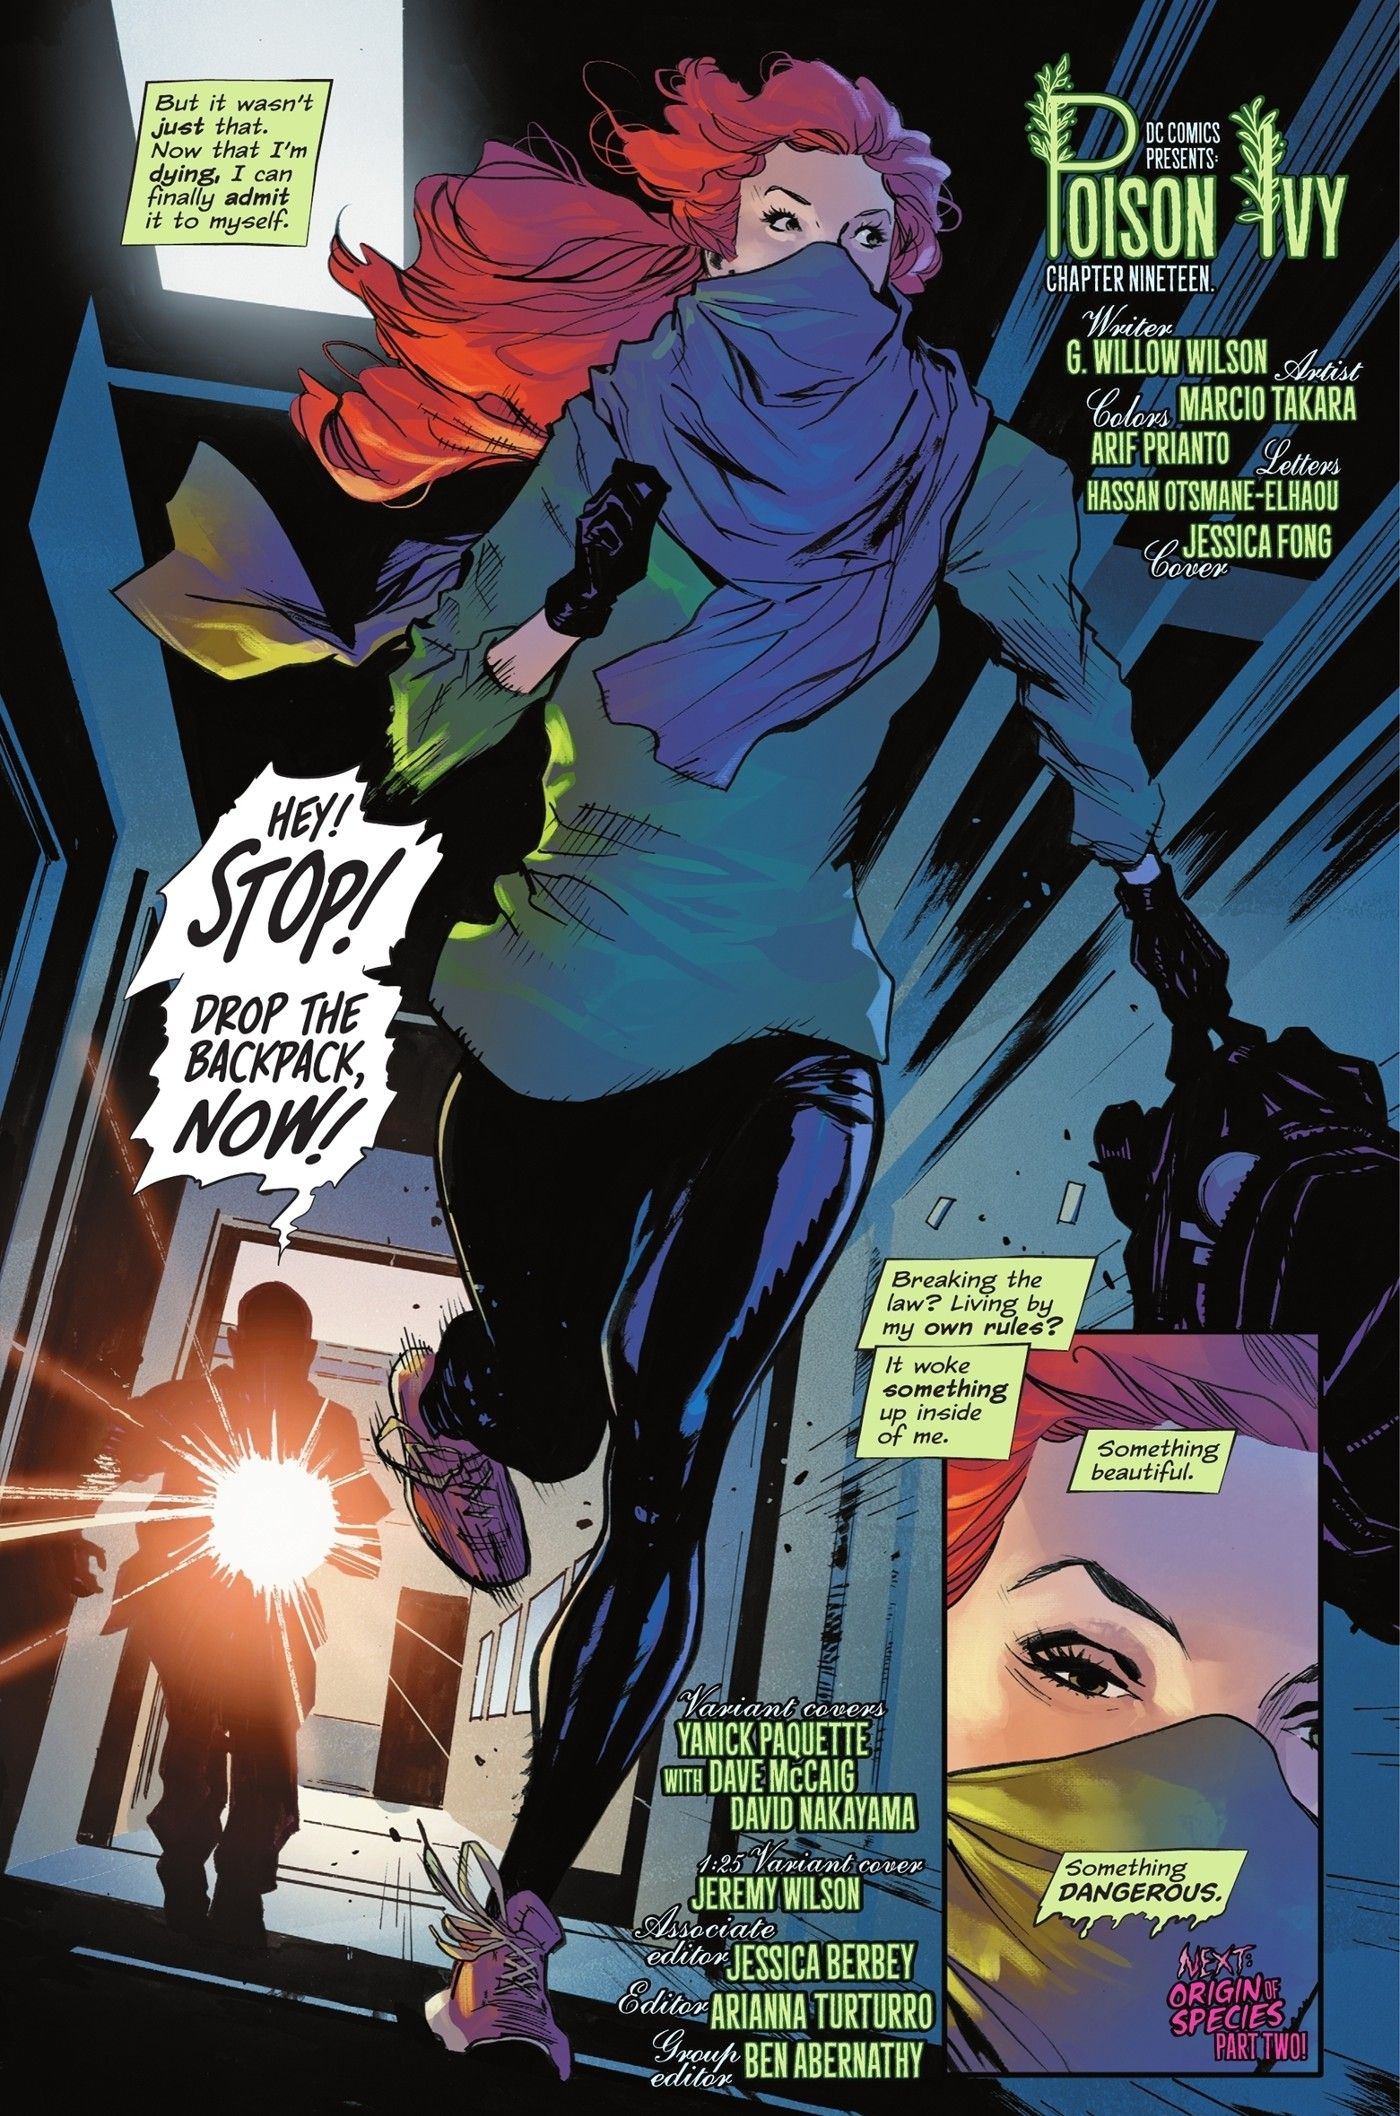 Poison Ivy's New Origin Redefines Her 'Supervillain' Identity